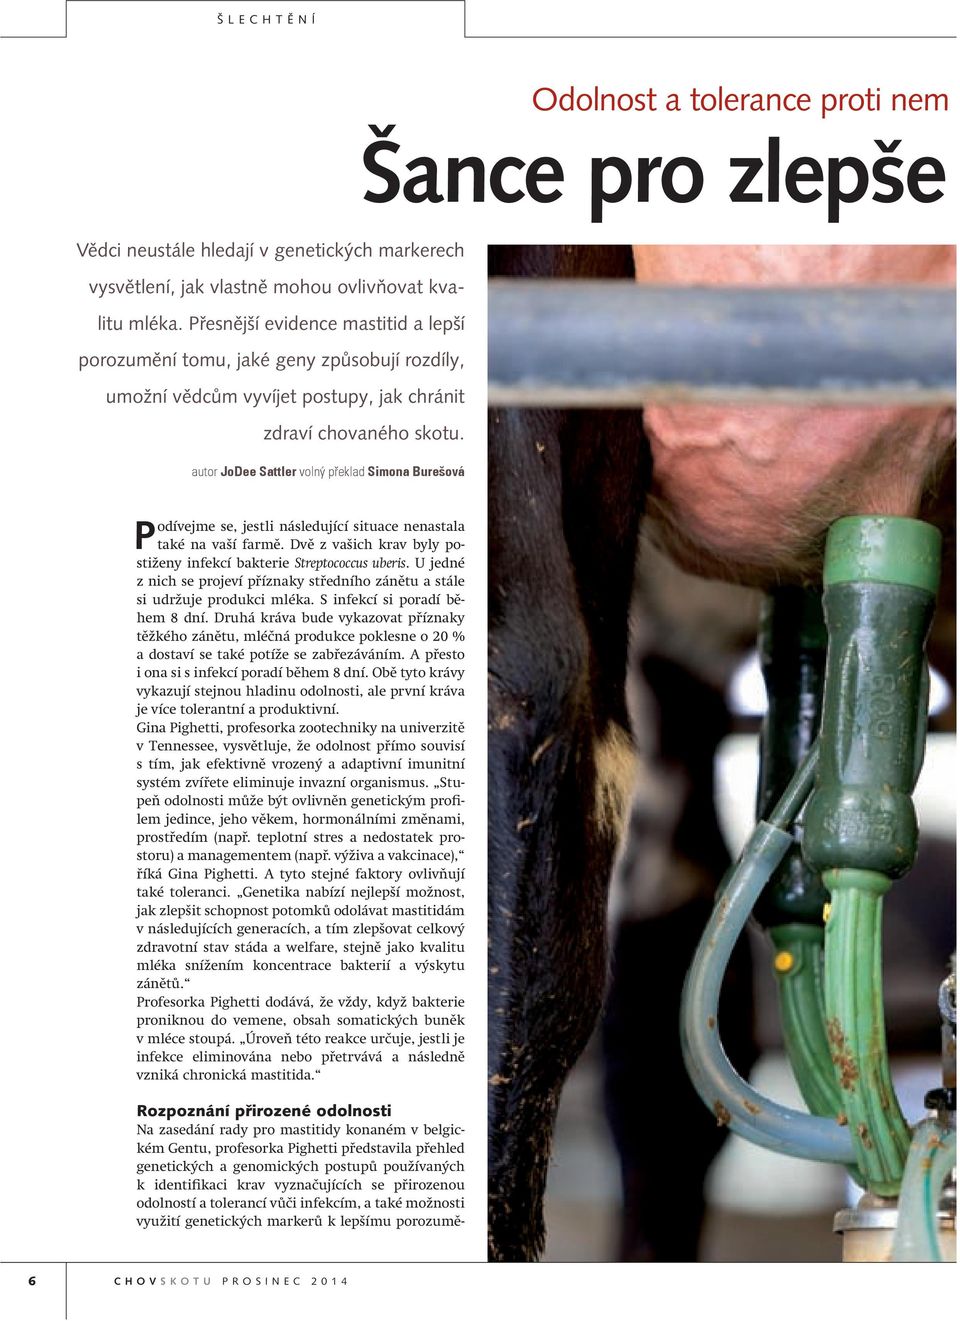 Rozpoznání přirozené odolnosti Na zasedání rady pro mastitidy konaném v belgickém Gentu, profesorka Pighetti představila přehled genetických a genomických postupů používaných k identifikaci krav